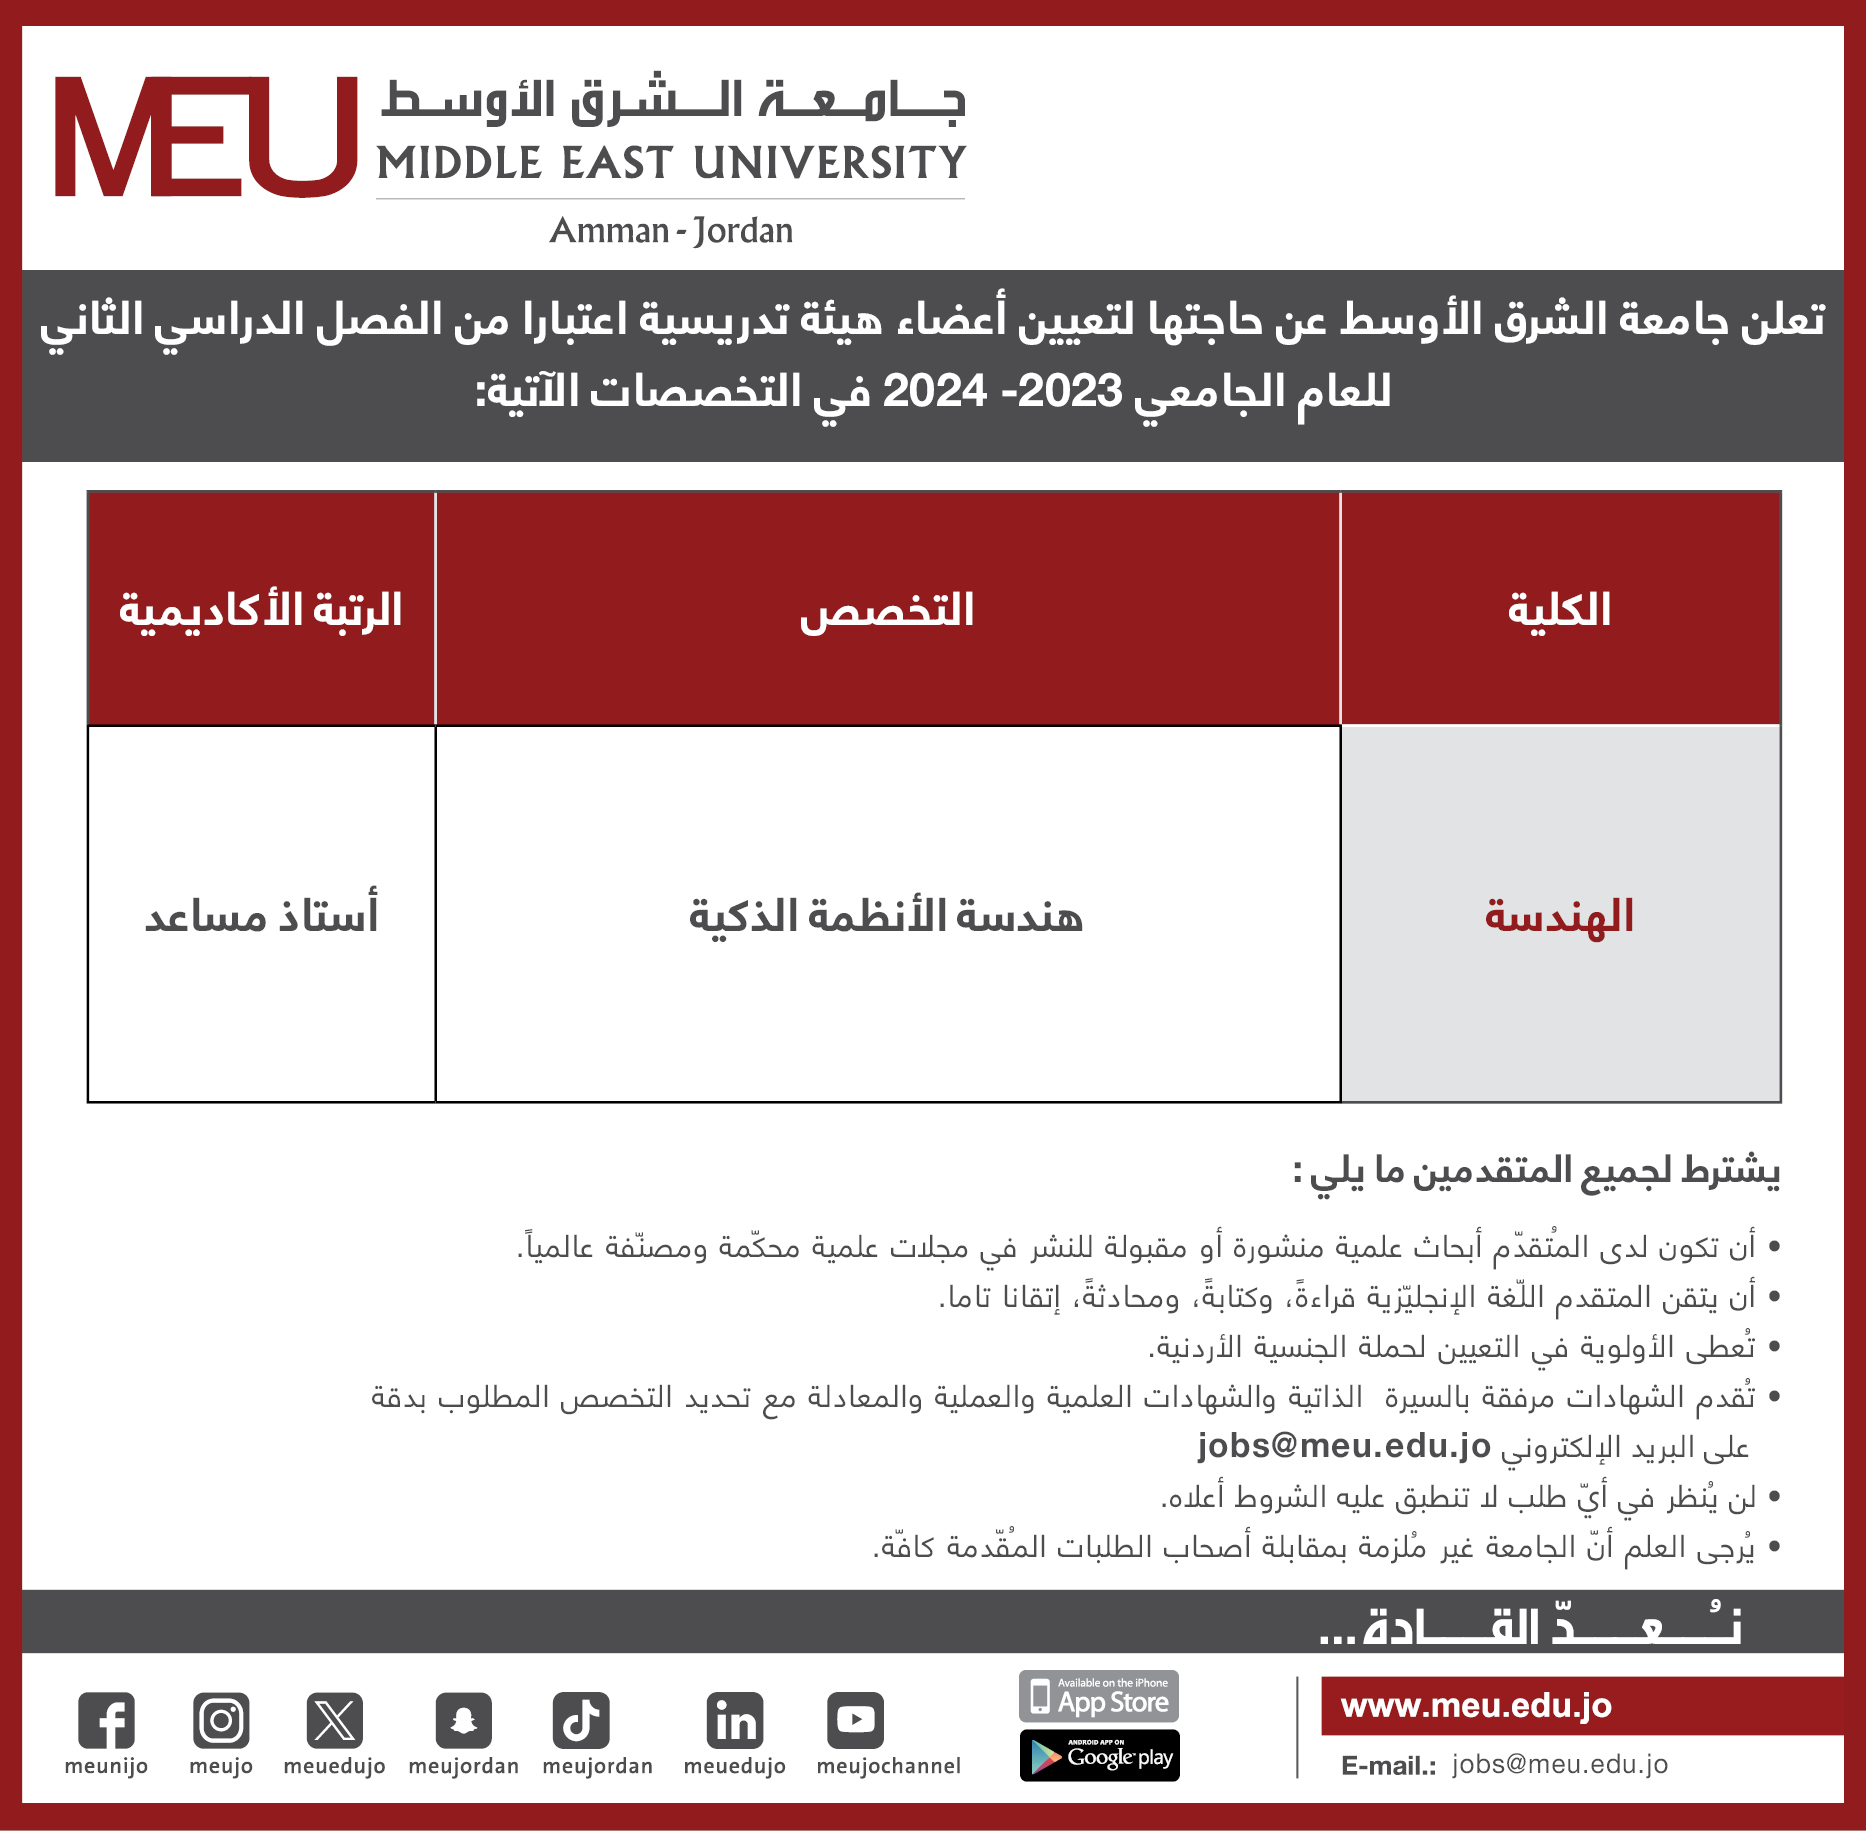 جامعة الشرق الأوسط تعلن عن حاجتها لشاغر أكاديمي